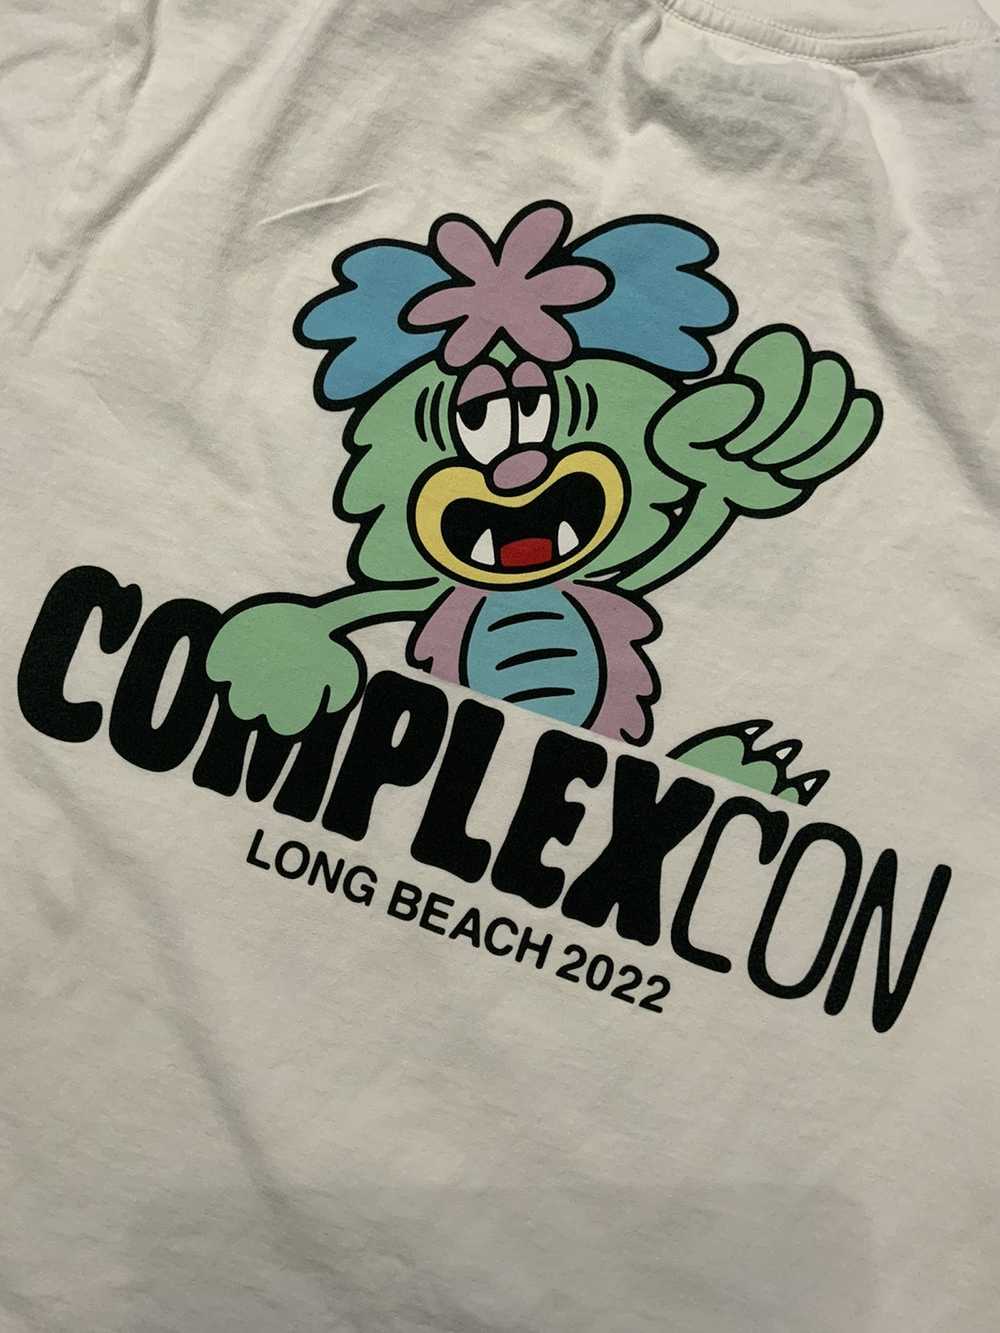 ComplexCon ComplexCon 2022 Long Beach California … - image 1